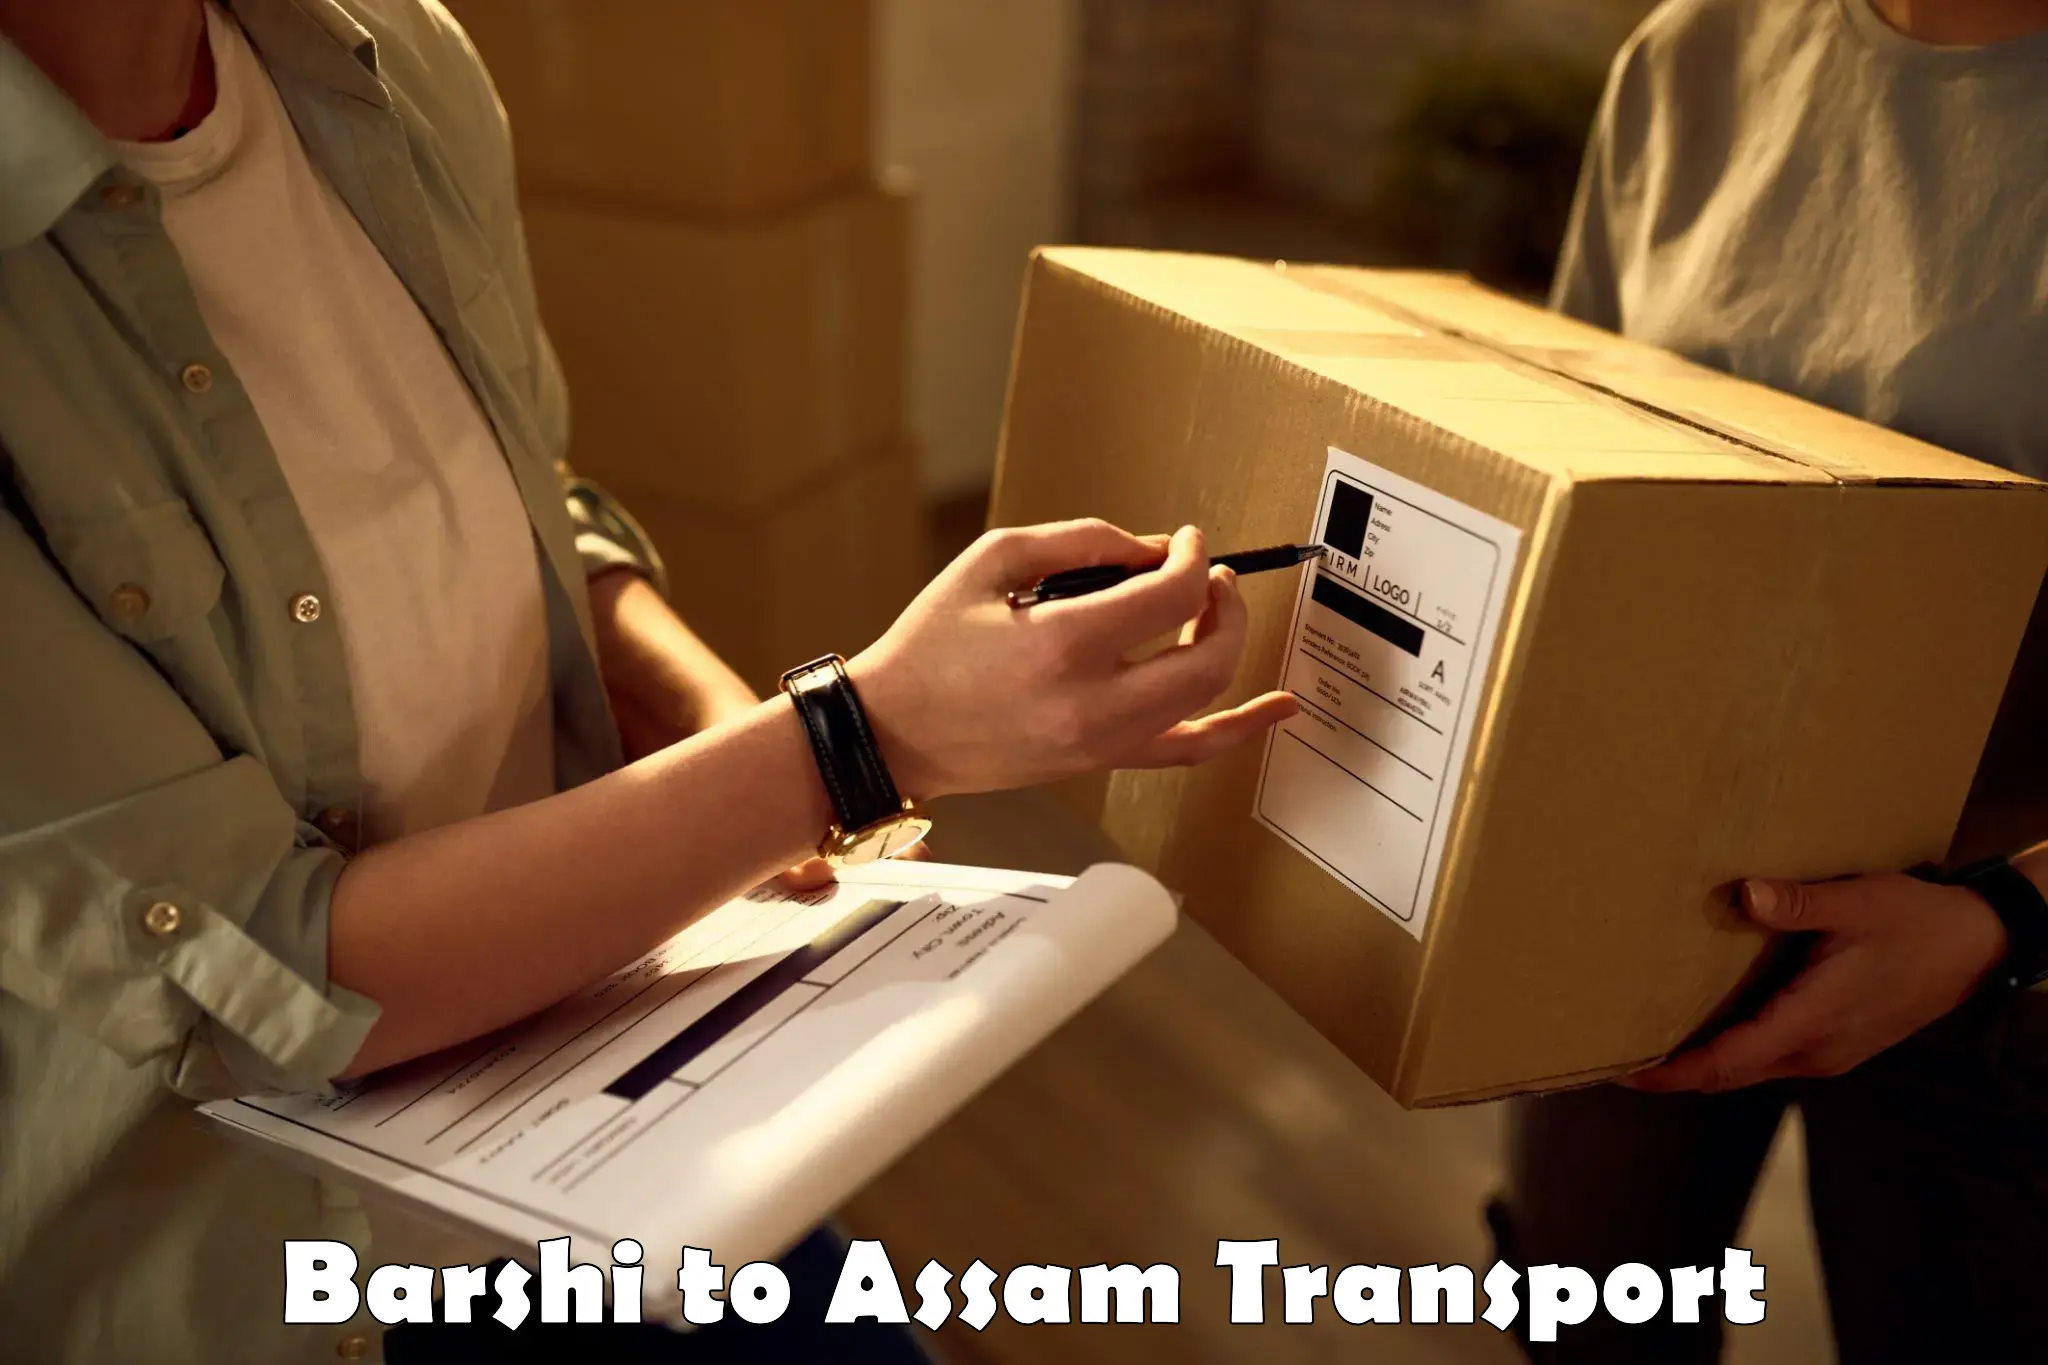 Two wheeler parcel service Barshi to Amoni